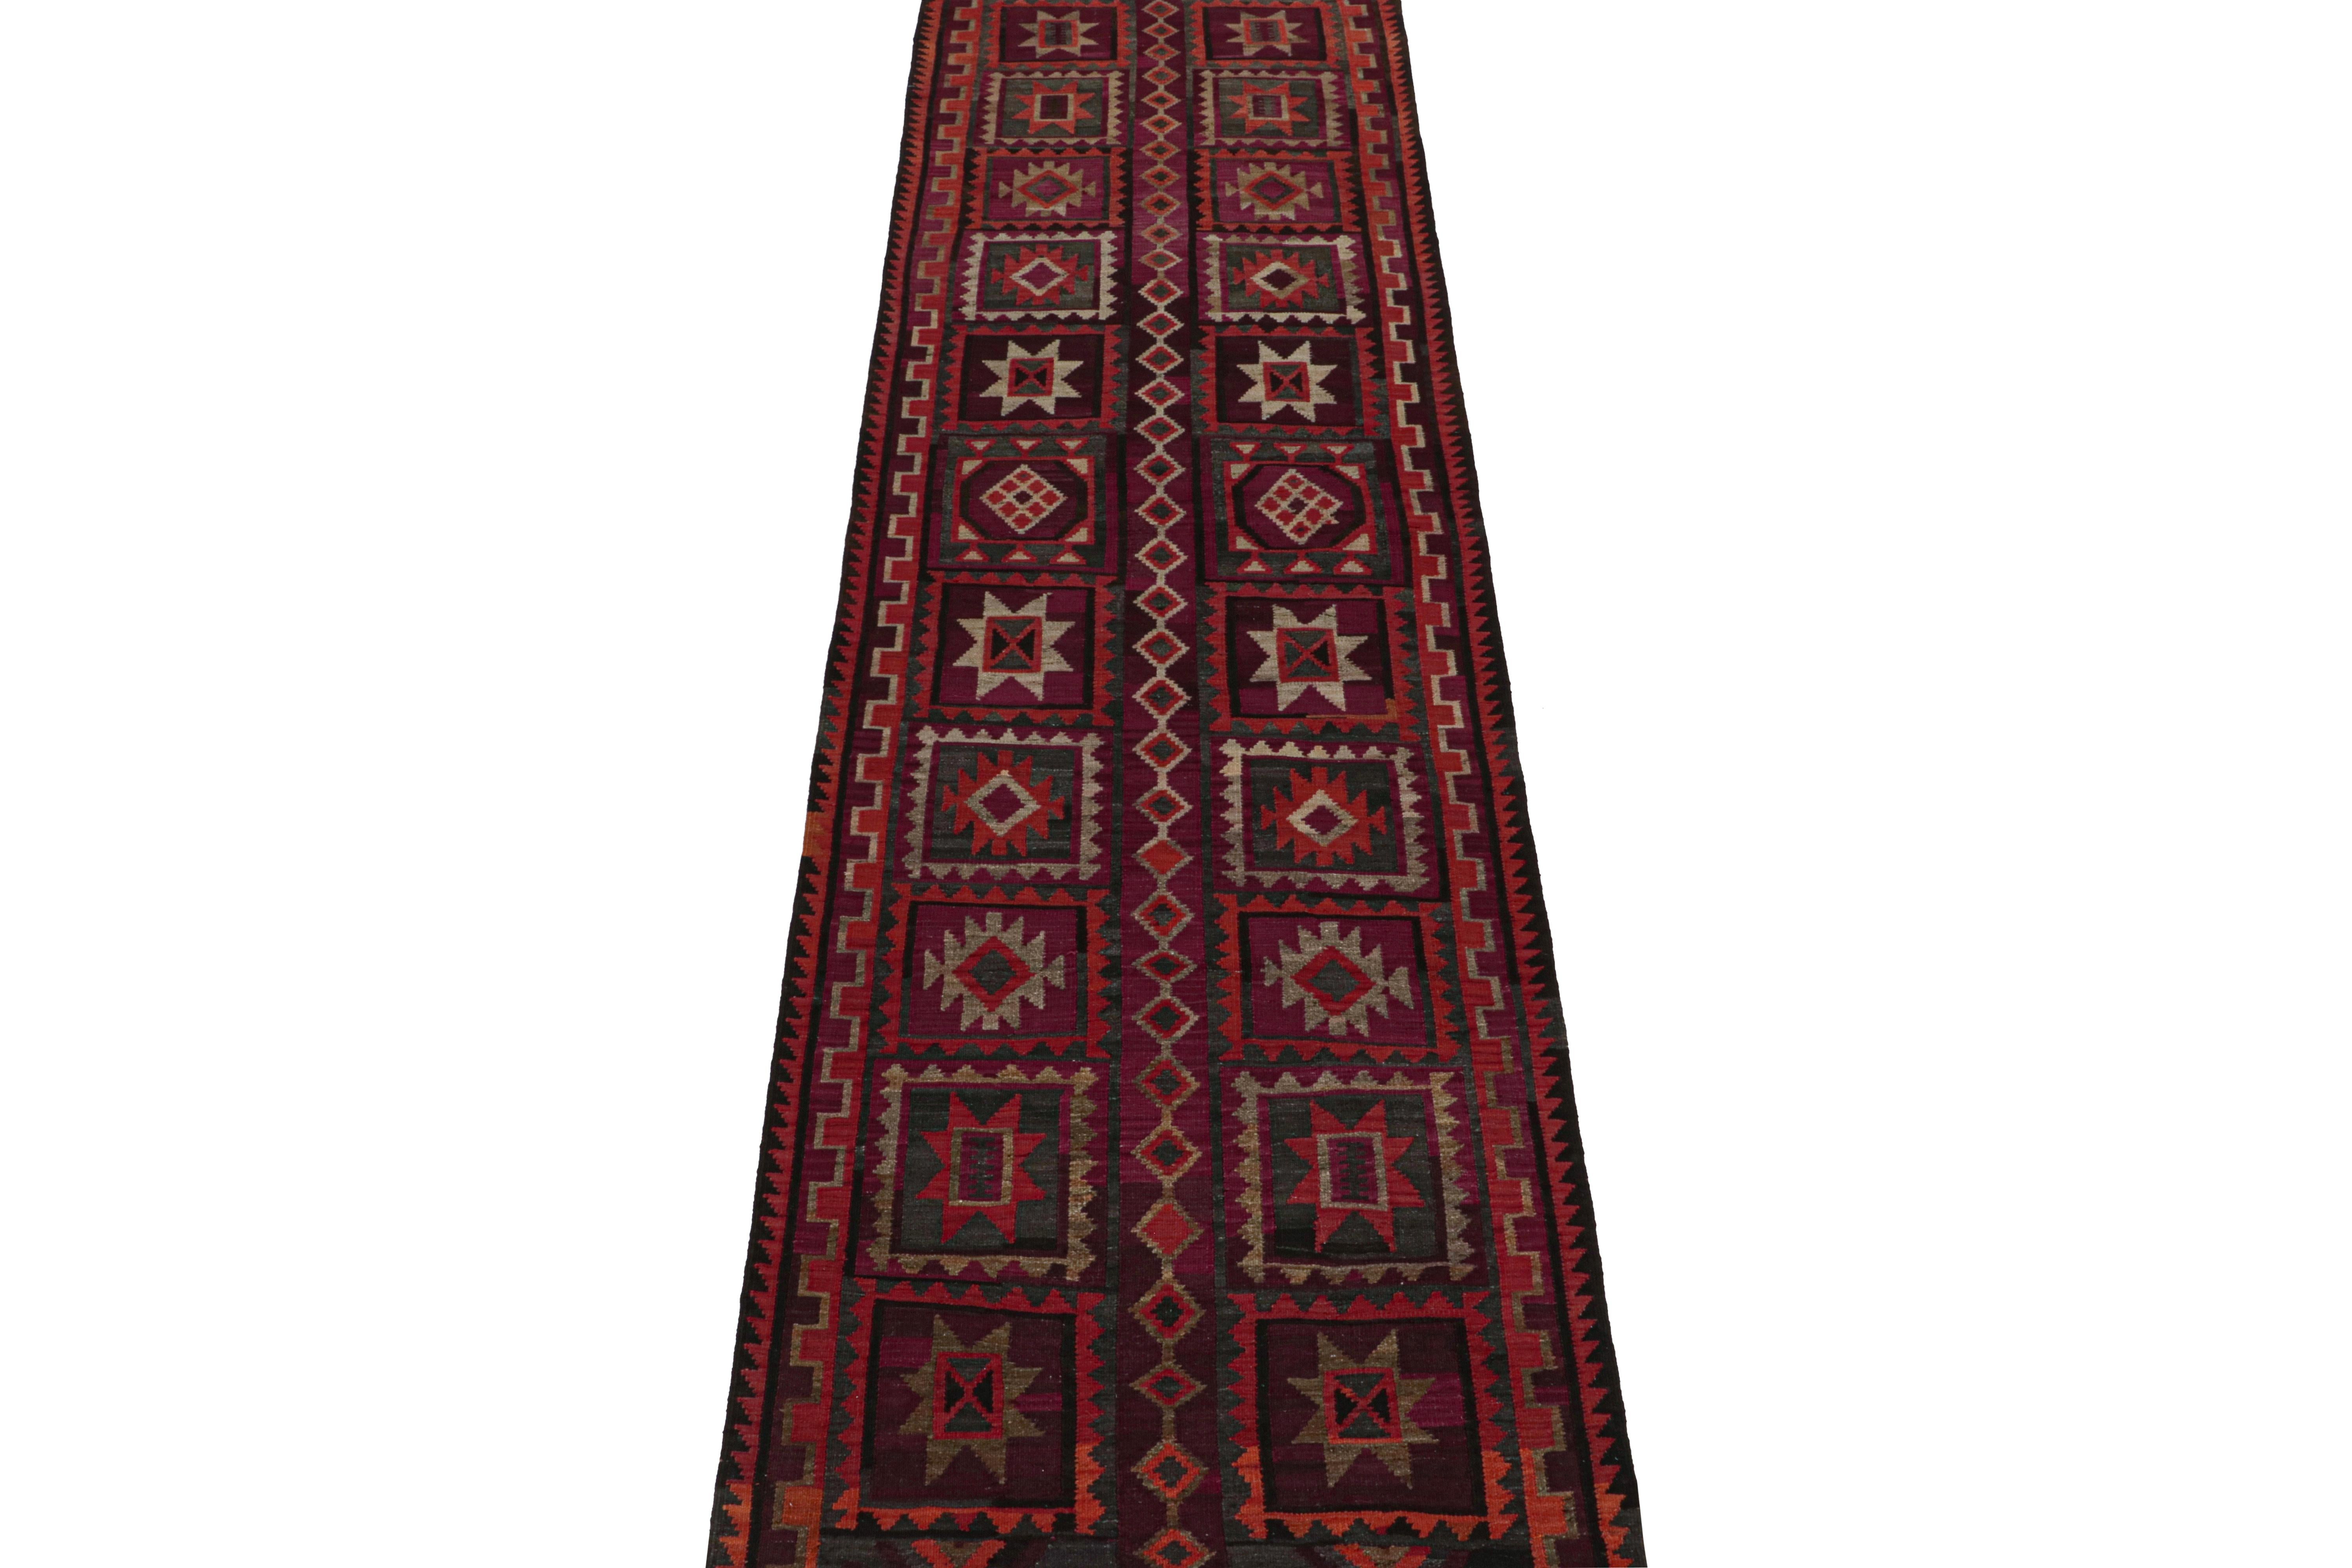 Ce kilim persan vintage CIRCA 4x13 est tissé à la main en laine et date des années 1950-1960.

Sur le Design : 

Cette riche pièce présente des motifs tribaux dans une utilisation très intéressante de couleurs classiques. Un œil attentif remarquera